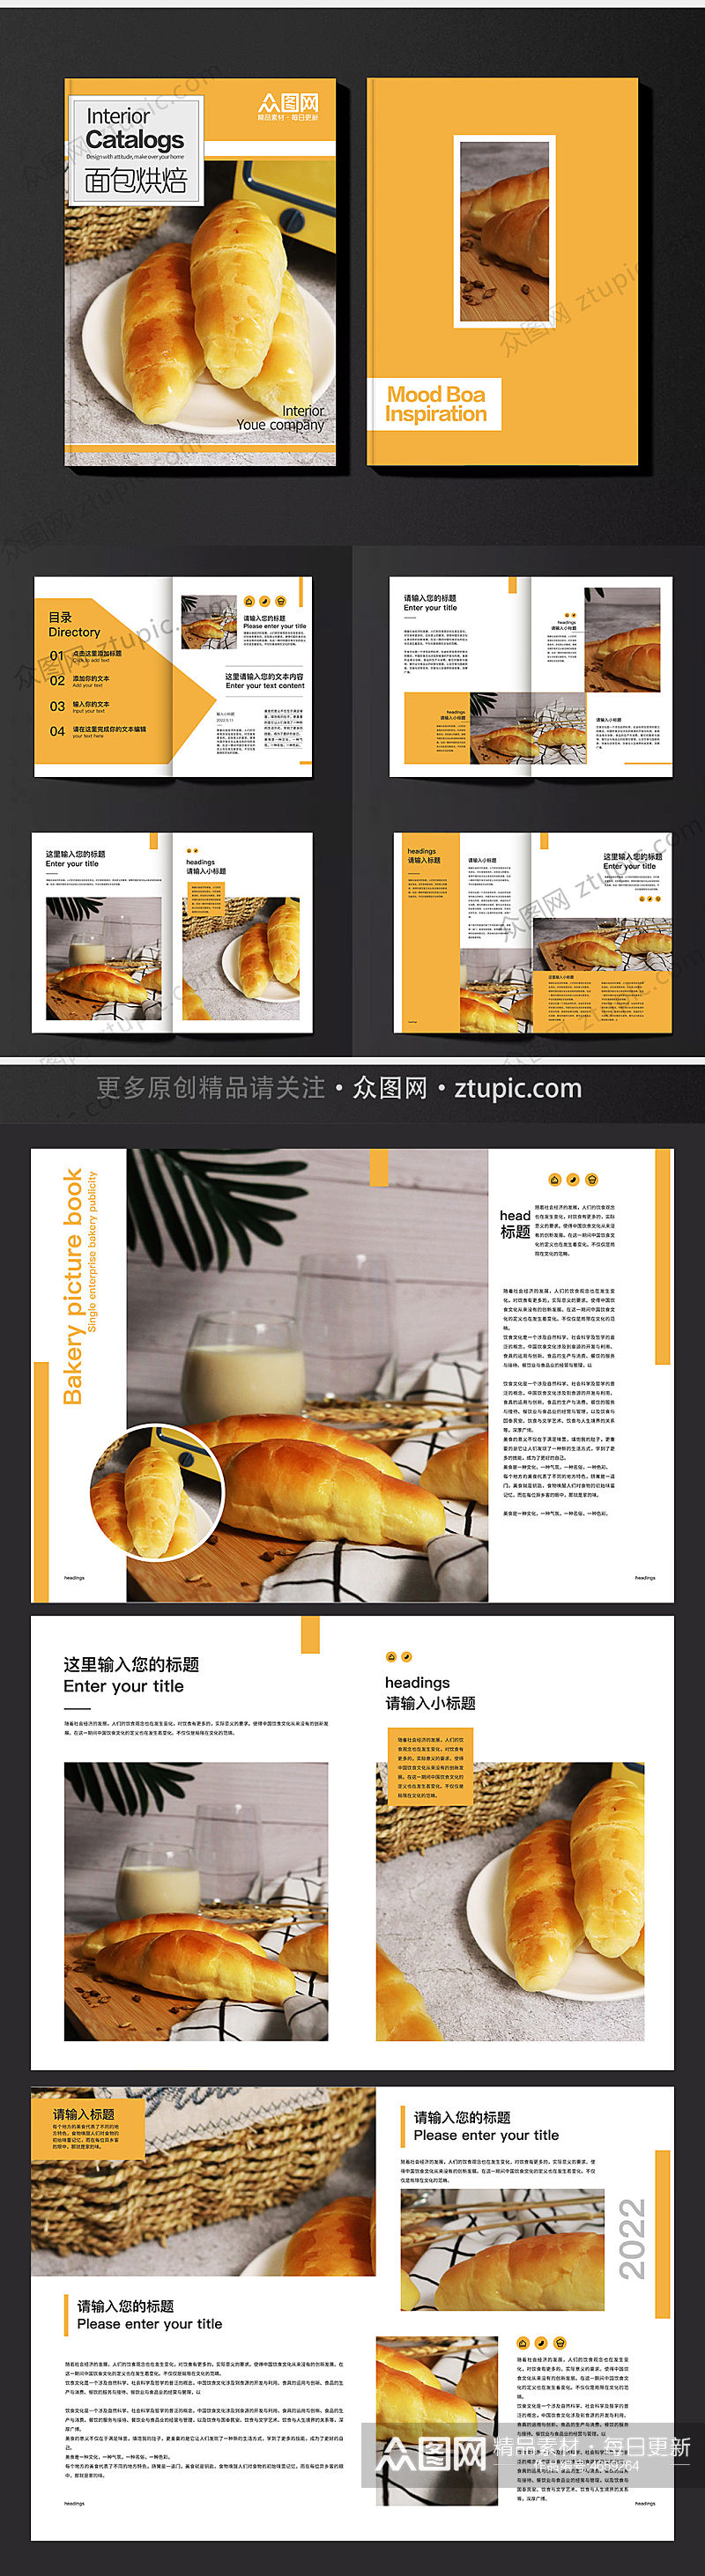 面包烘焙店美食画册素材